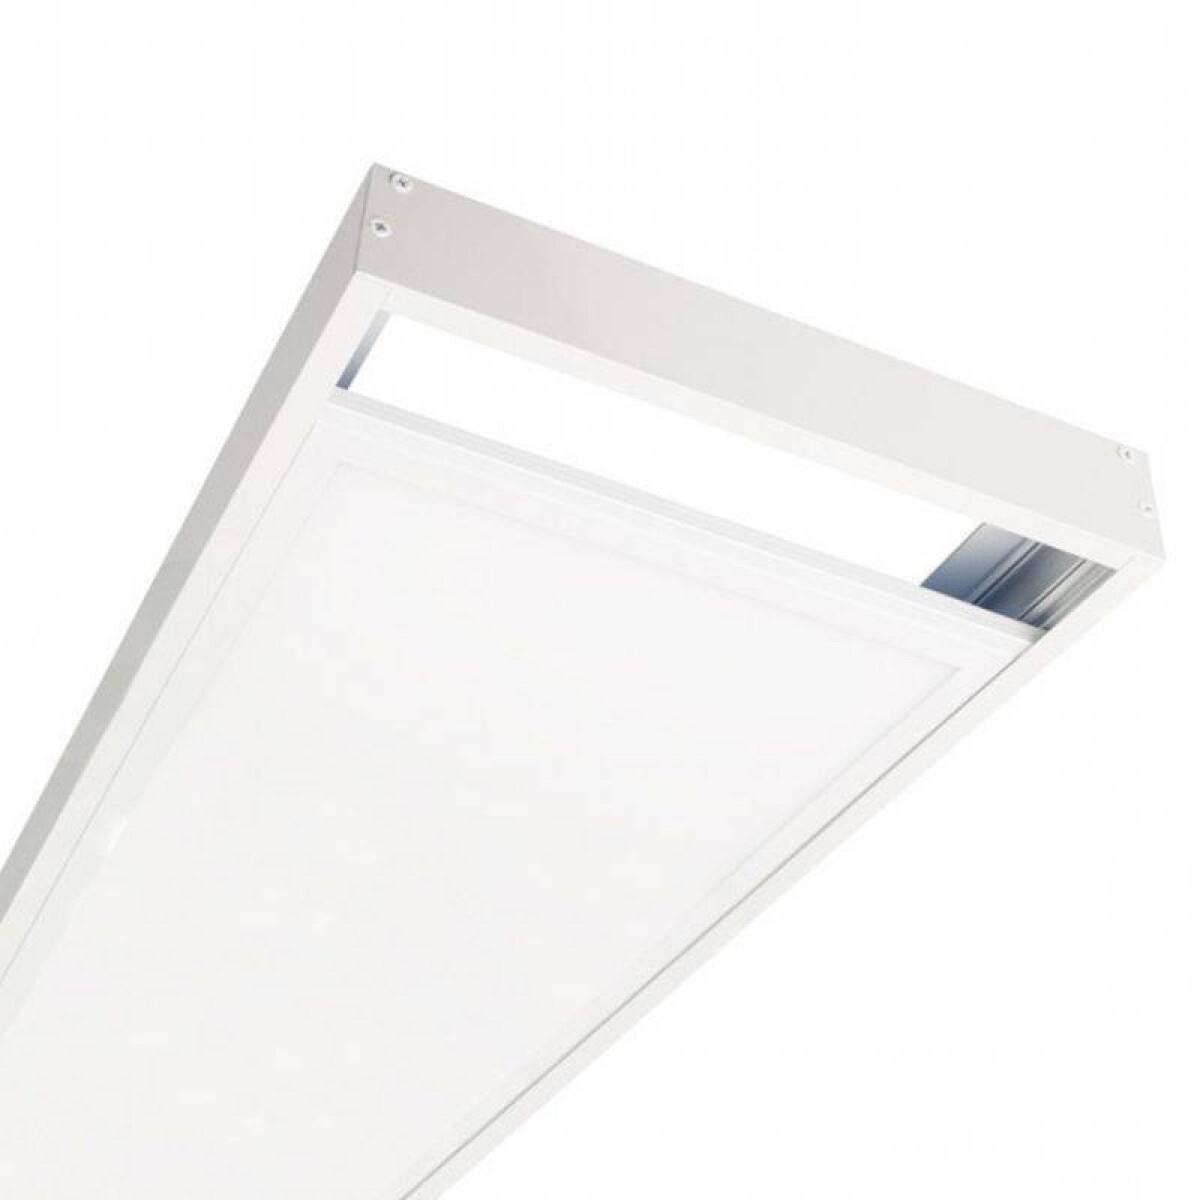 Panel led con marco para adosar 48w 119.5*29.5cm - Luz Fría 